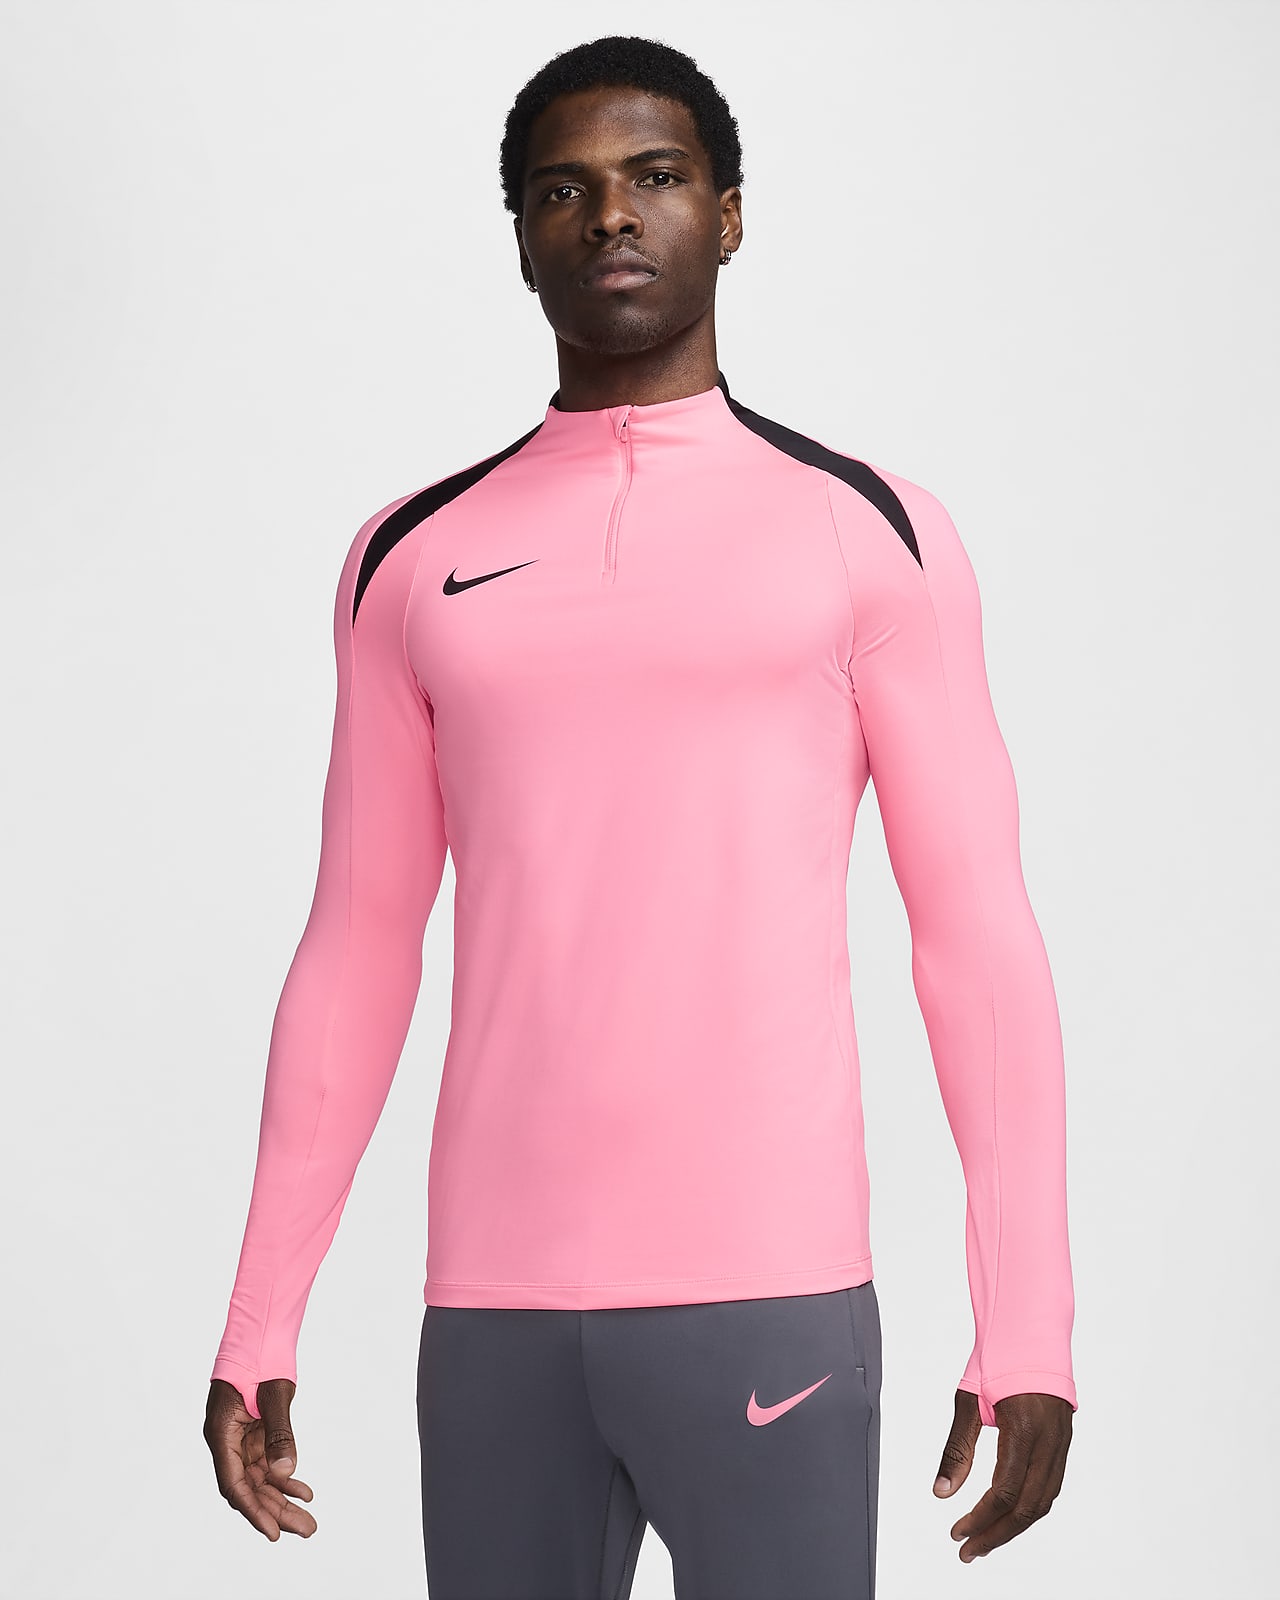 Nike Strike Dri-FIT fotballtreningsoverdel med glidelås i halsen til herre